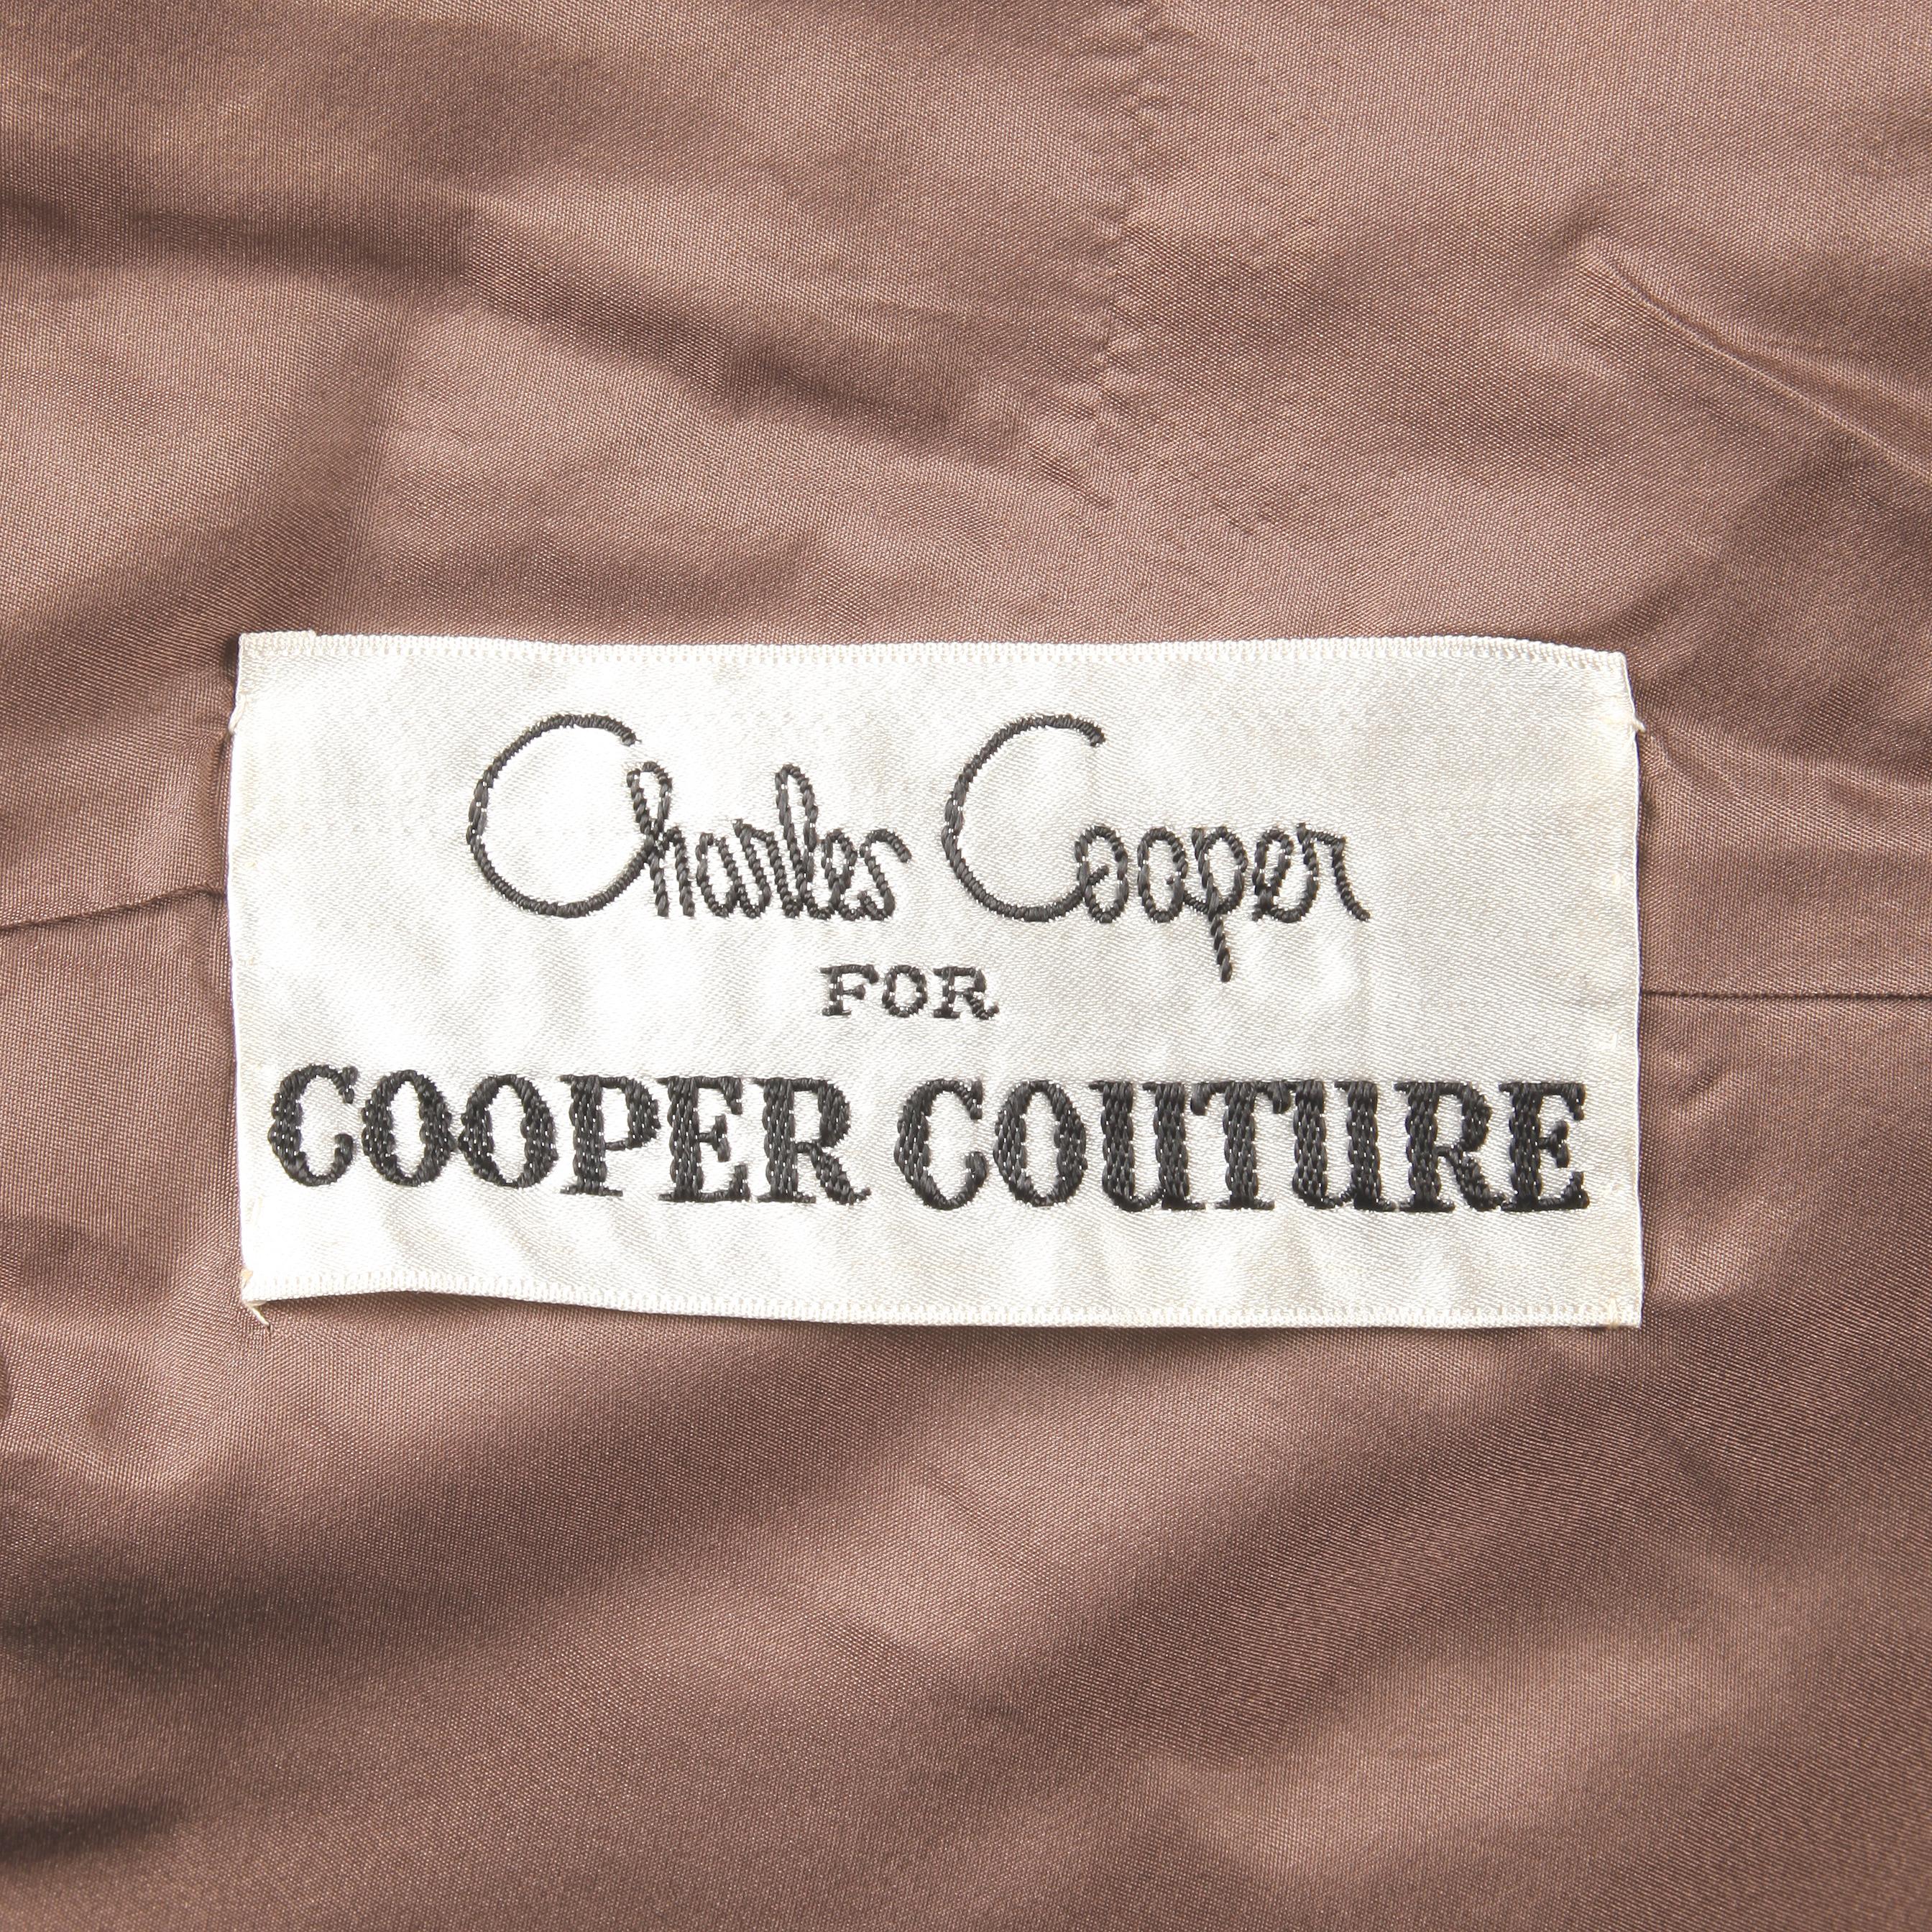 Magnifique manteau en velours marron vintage des années 1960 par Charles Cooper pour Cooper Couture chez Nan Duskin. Entièrement doublé avec fermeture par bouton cabachon sur le devant. Poches latérales. Convient comme une taille large moderne. Le